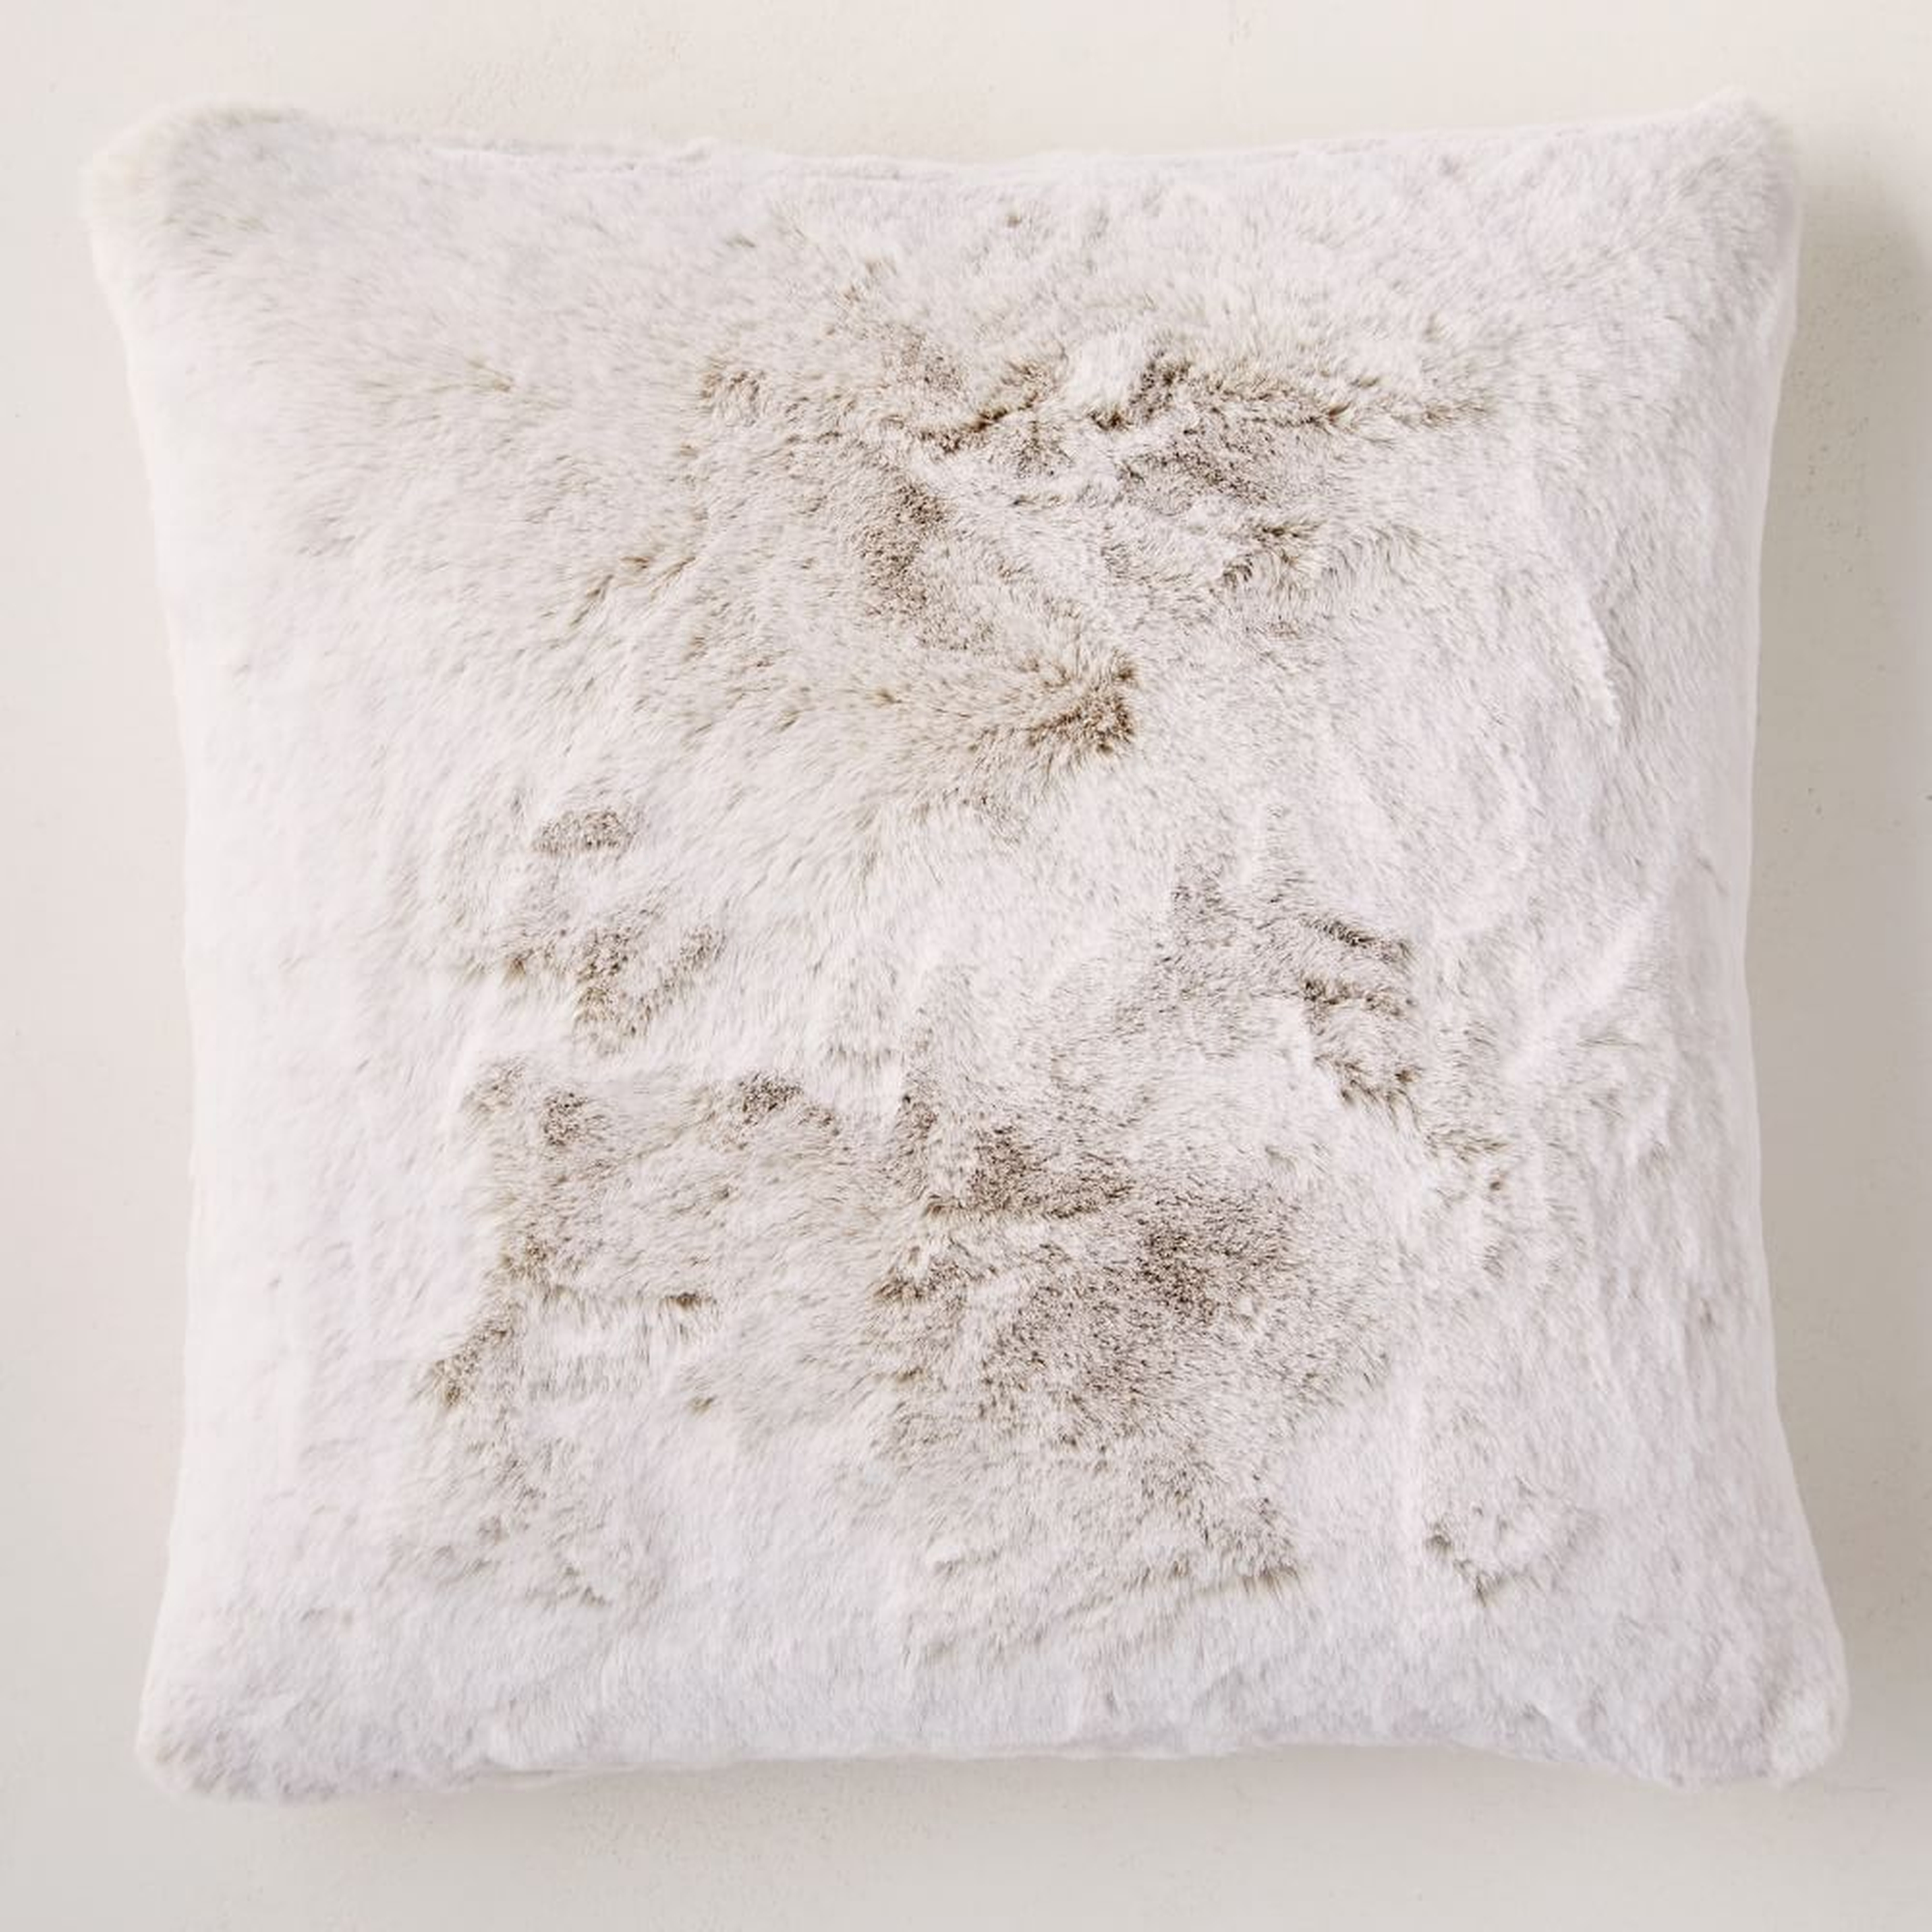 Faux Fur Chinchilla Pillow Cover, 20"x20", White - West Elm